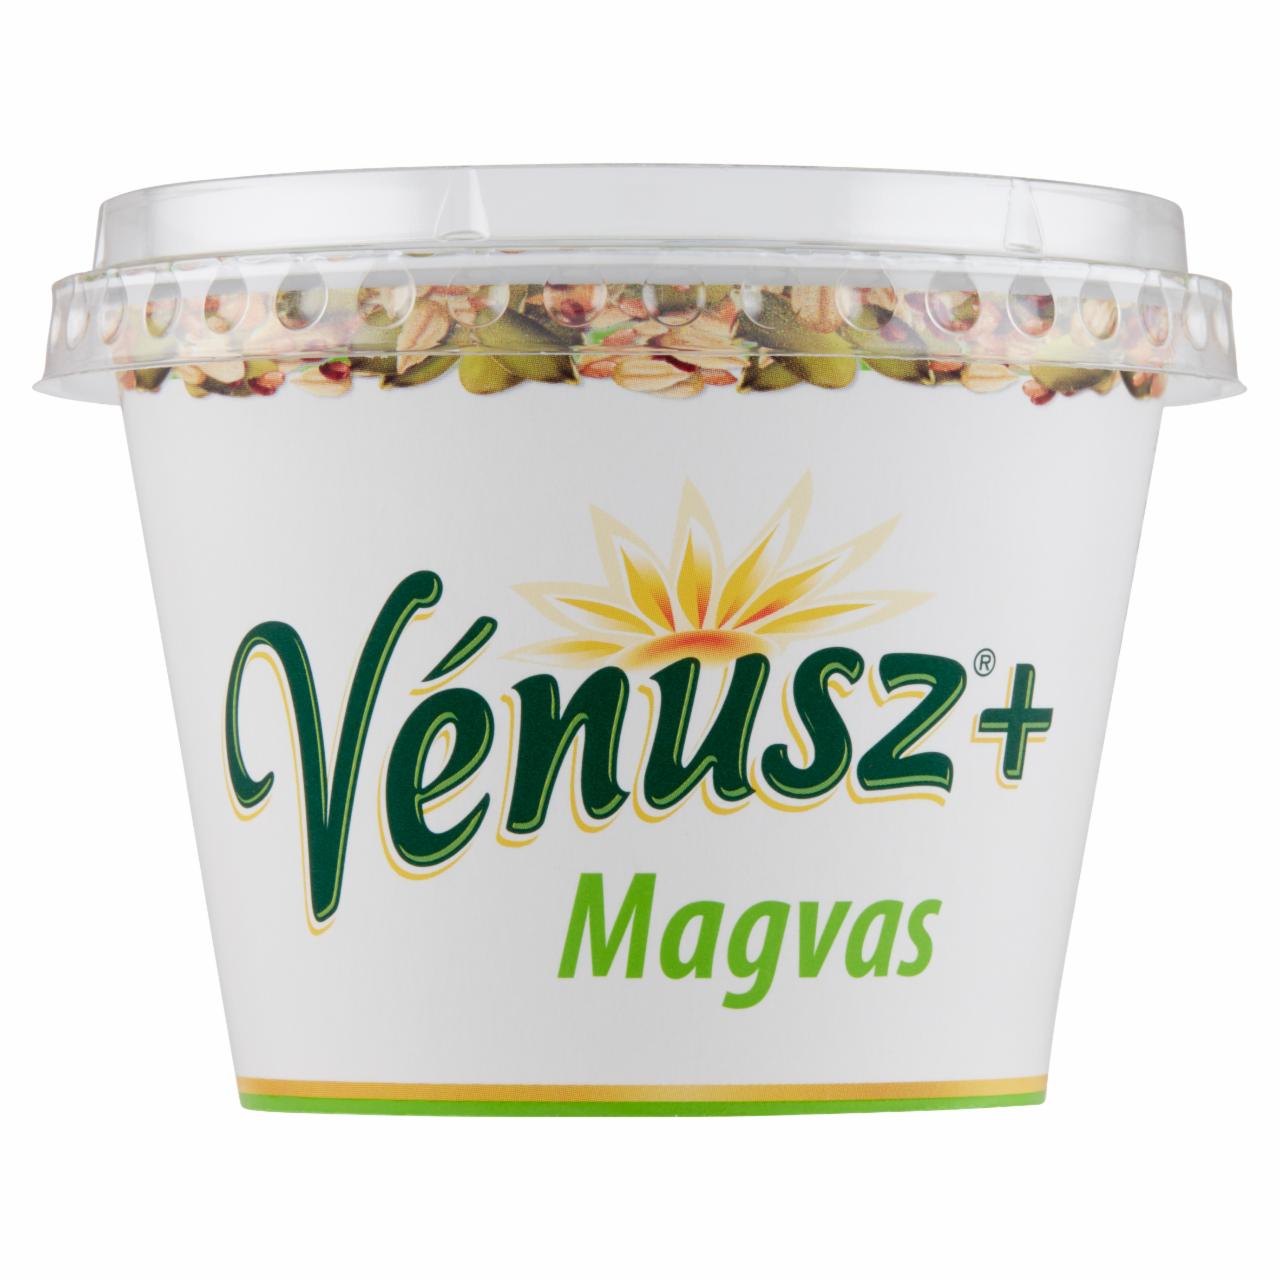 Képek - Vénusz+ Magvas 50% zsírtartalmú margarin 180 g